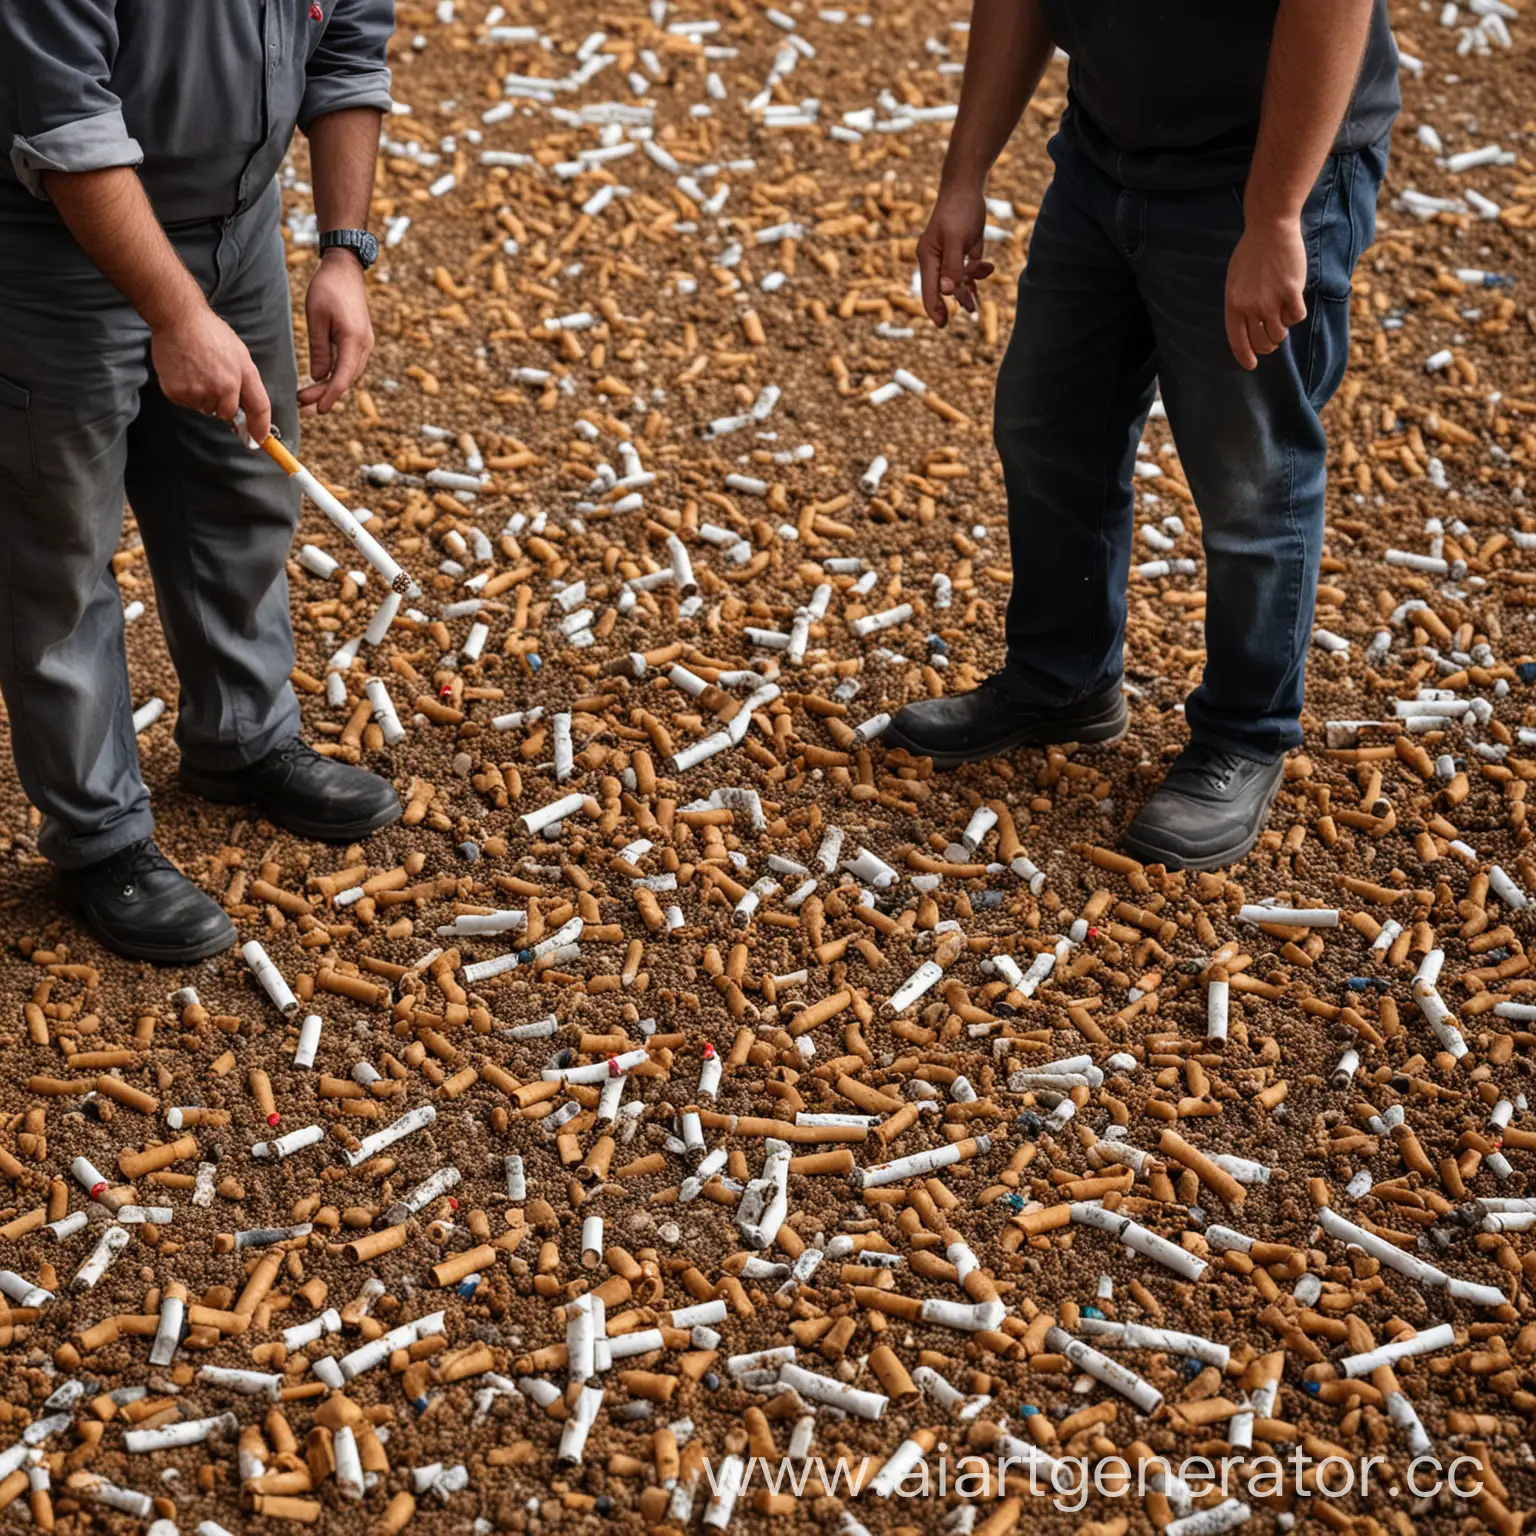 Турки, сортирующие сигаретные окурки в промышленных масштабах